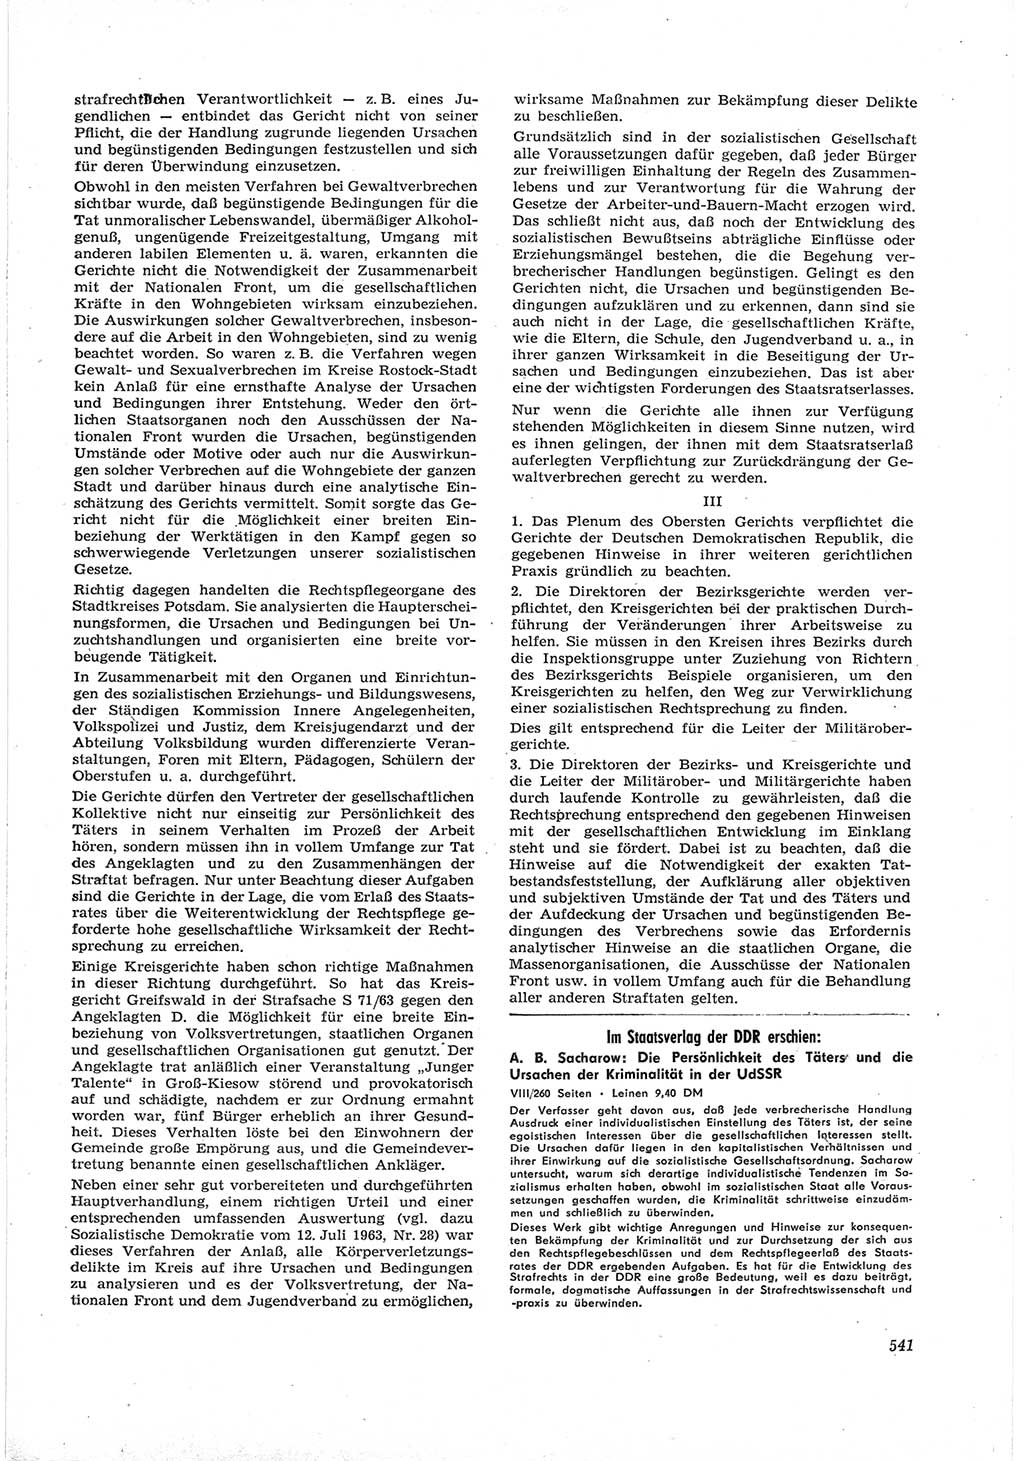 Neue Justiz (NJ), Zeitschrift für Recht und Rechtswissenschaft [Deutsche Demokratische Republik (DDR)], 17. Jahrgang 1963, Seite 541 (NJ DDR 1963, S. 541)